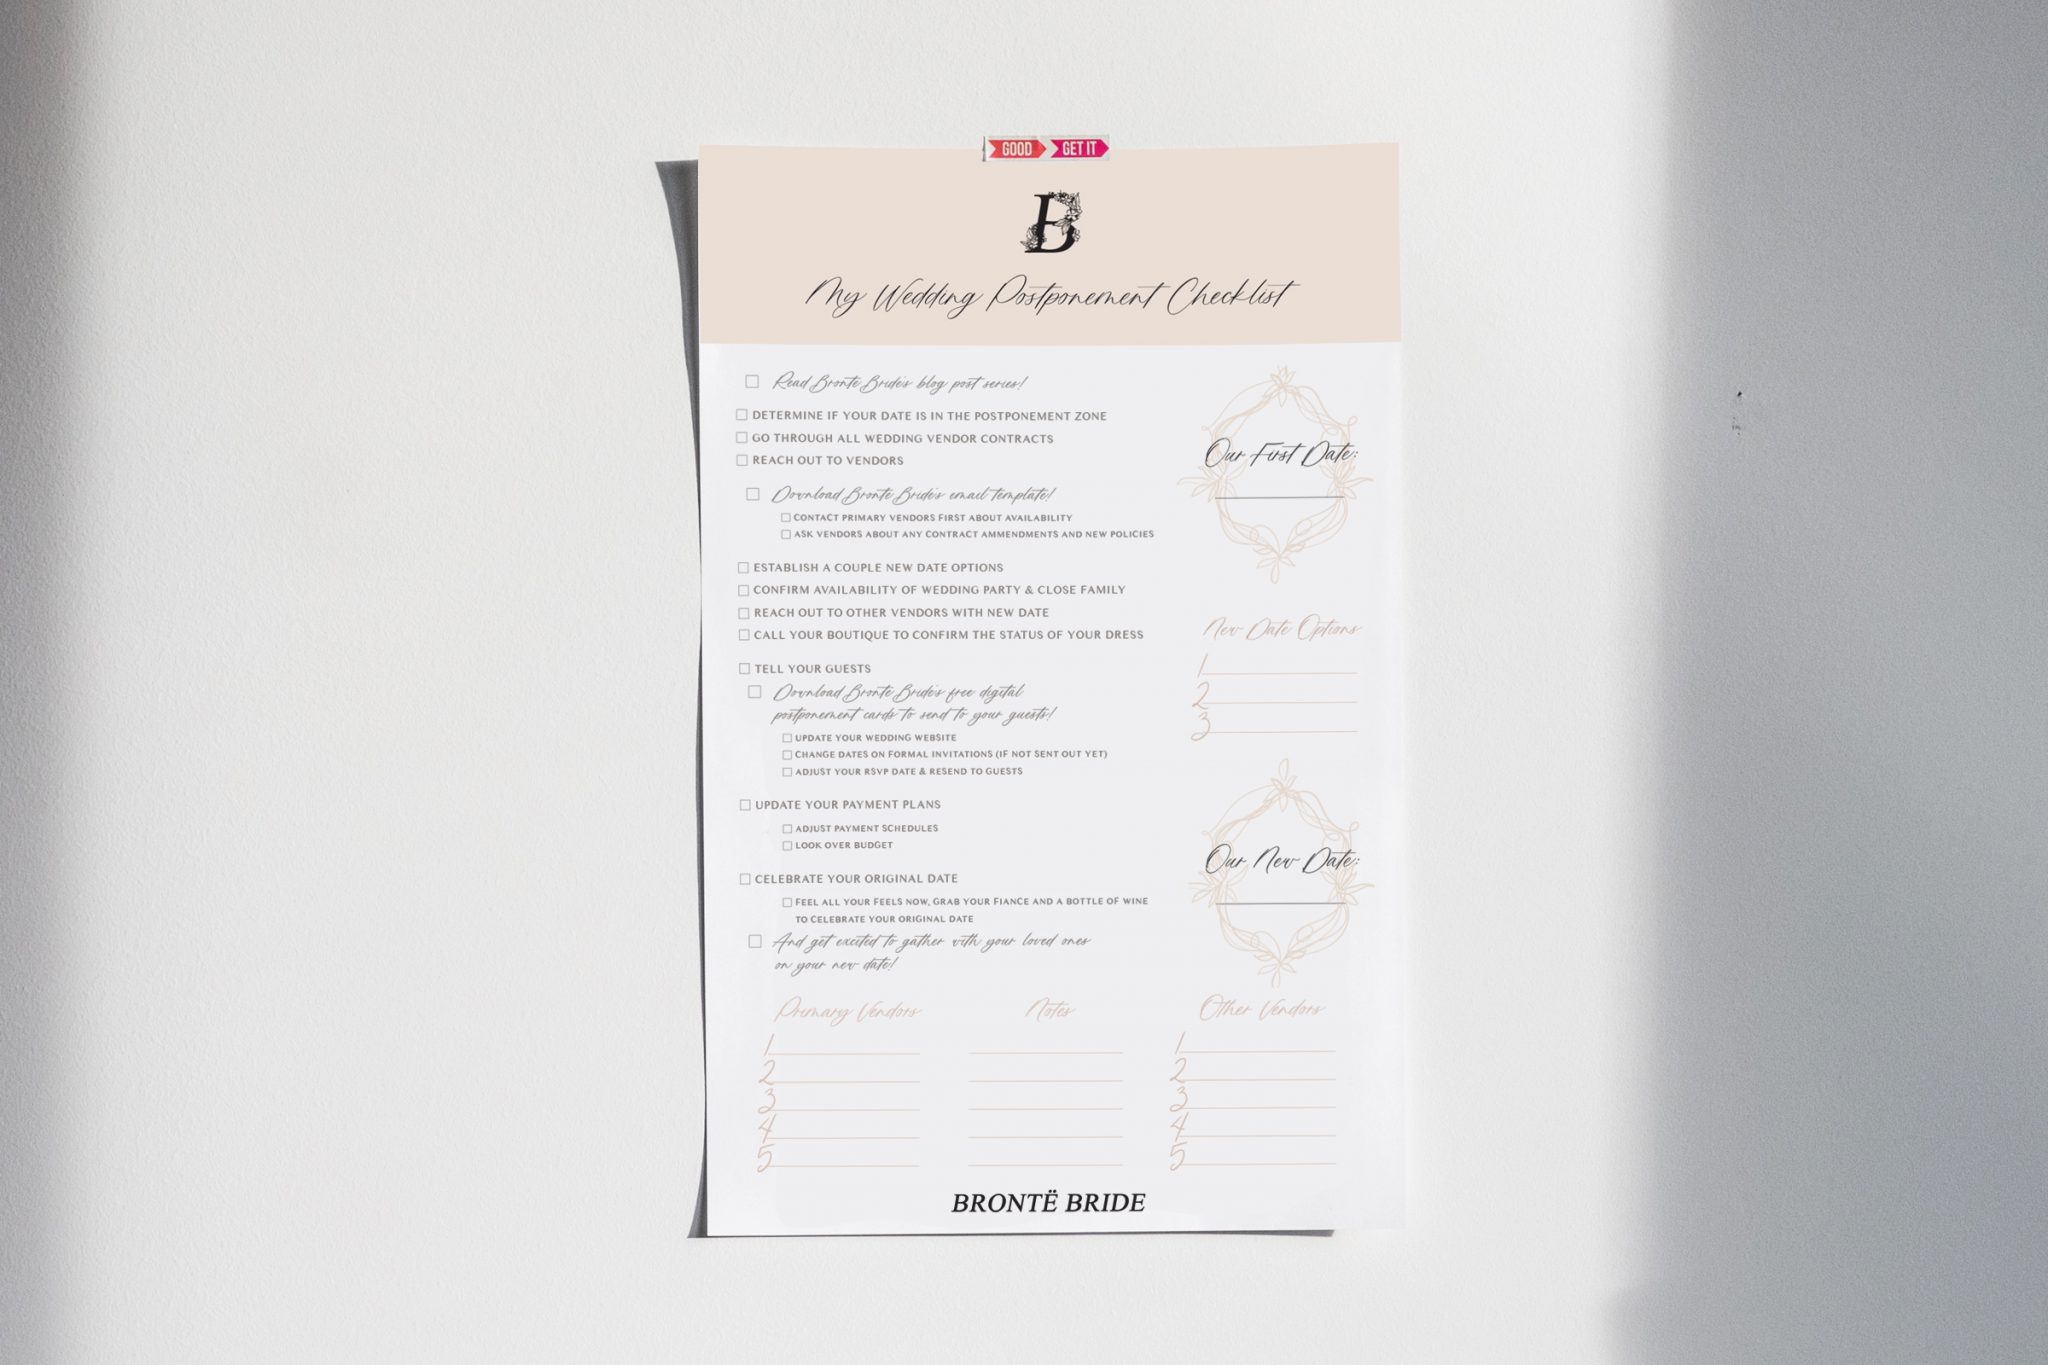 Wedding Postponement Checklist - free printable resource from Bronte Bride